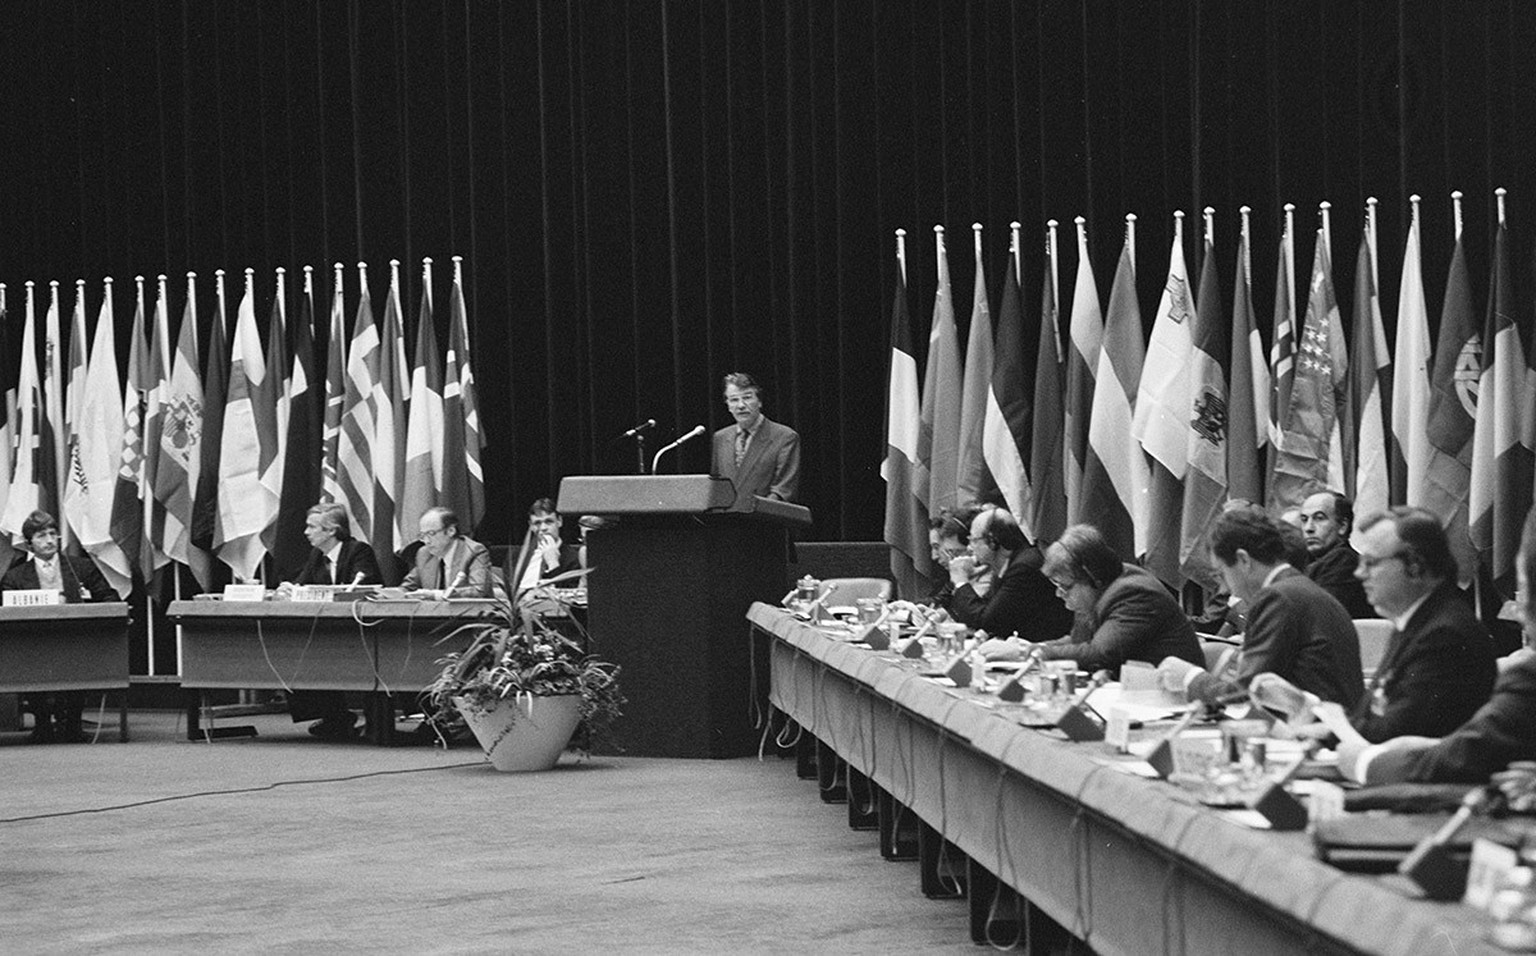 Rede von Bundesrat René Felber am KSZE-Expertentreffen in Genf, Oktober 1992.
https://permalink.nationalmuseum.ch/101031515